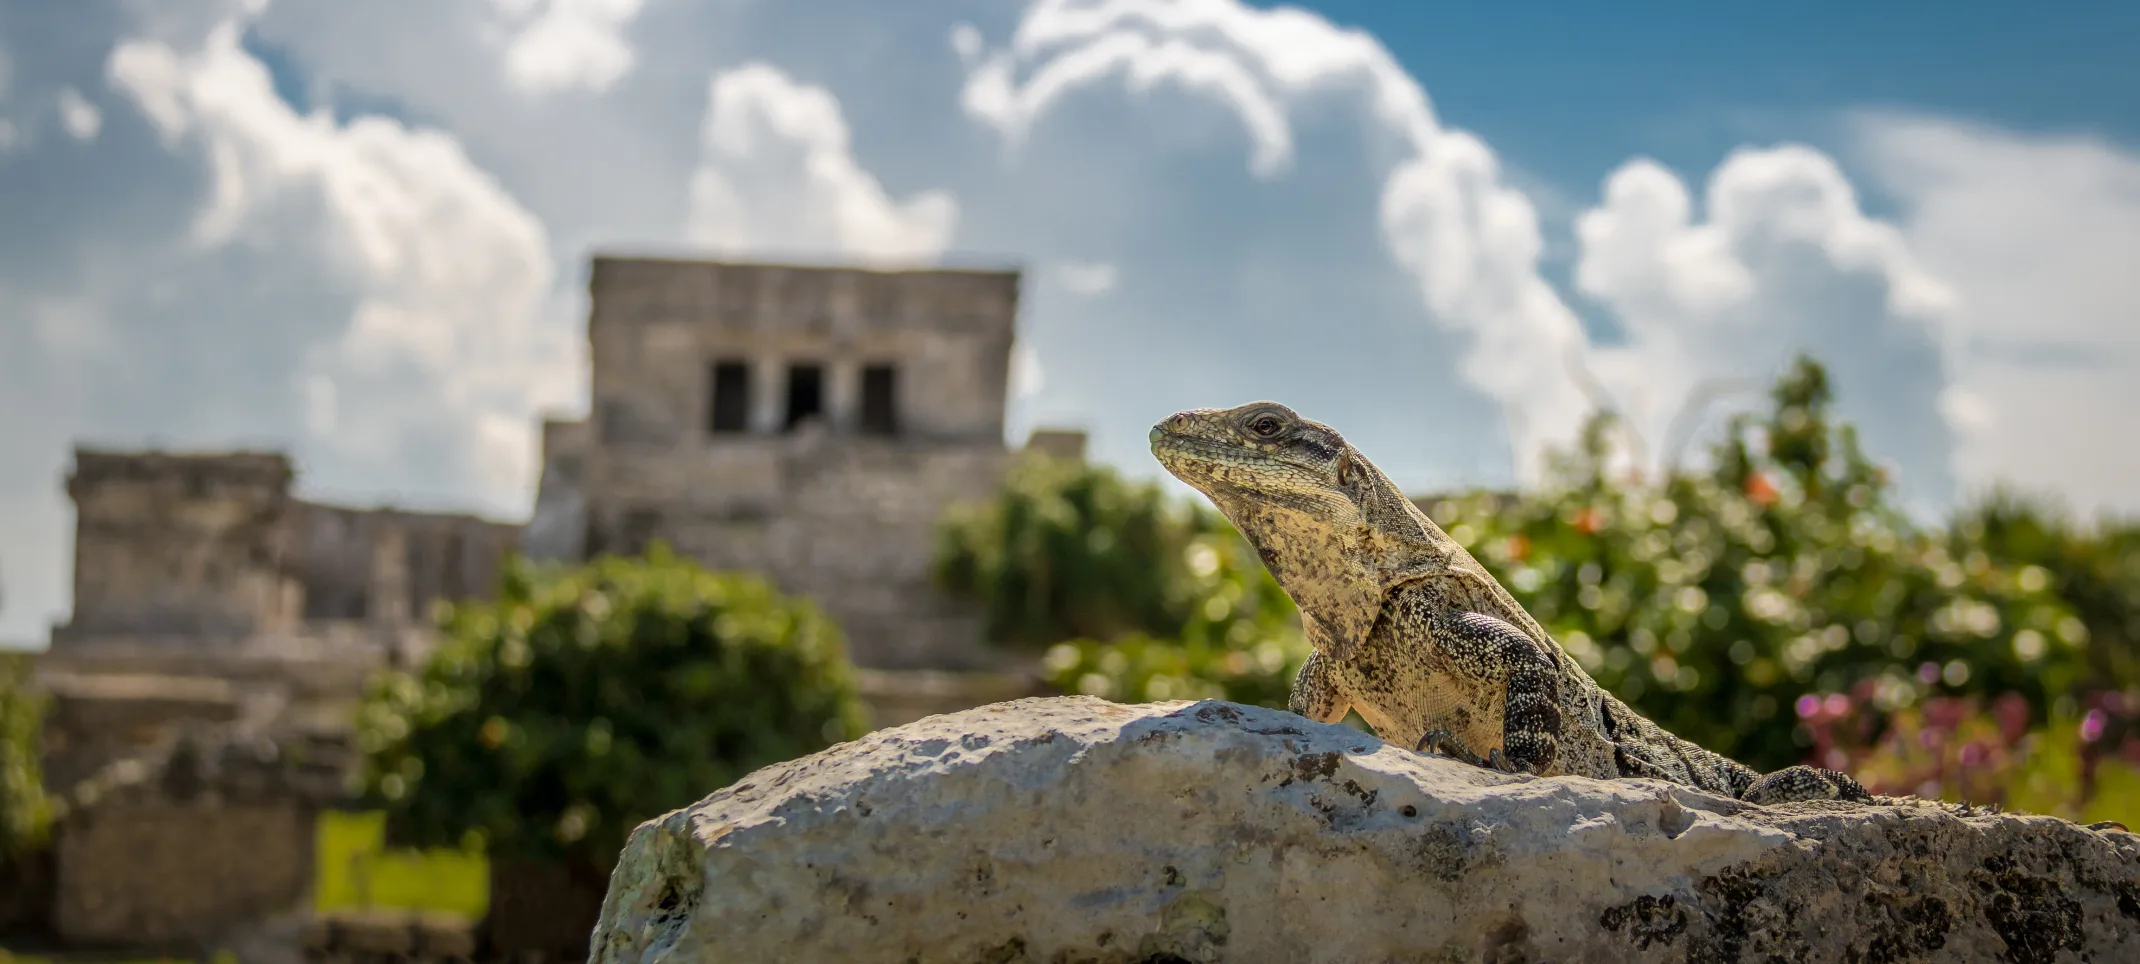 Lizard sitting on a rock 